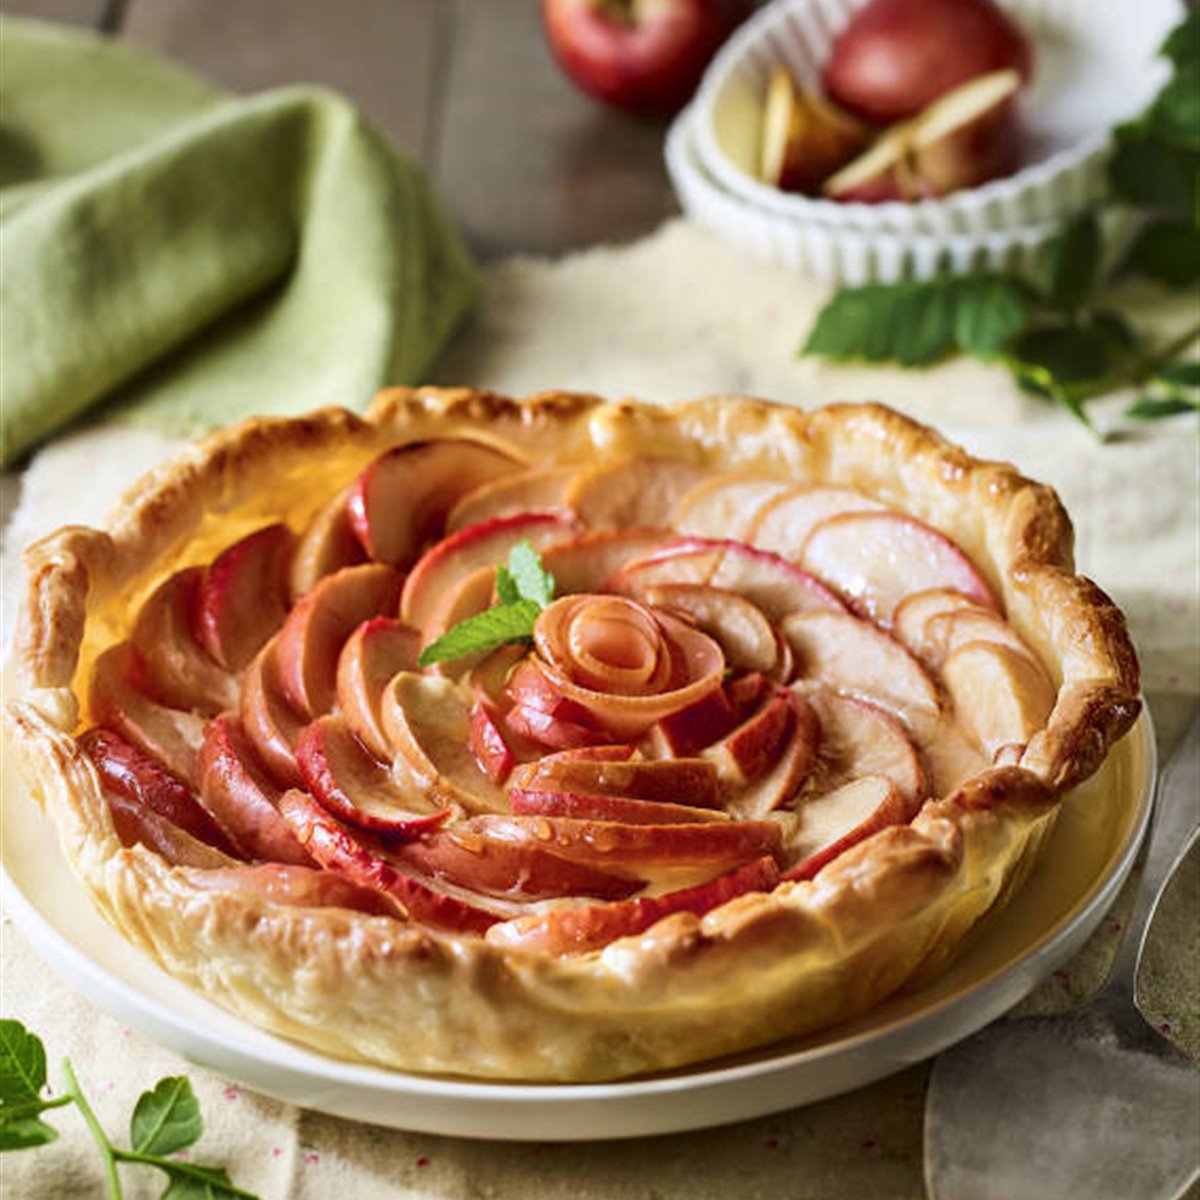 Si buscas un dulce más saludable, nos encontraste❗❗ 🍎 Tenemos esta  deliciosa tarta de hojaldre rellena de manzana y nuez 🚫 Sin…